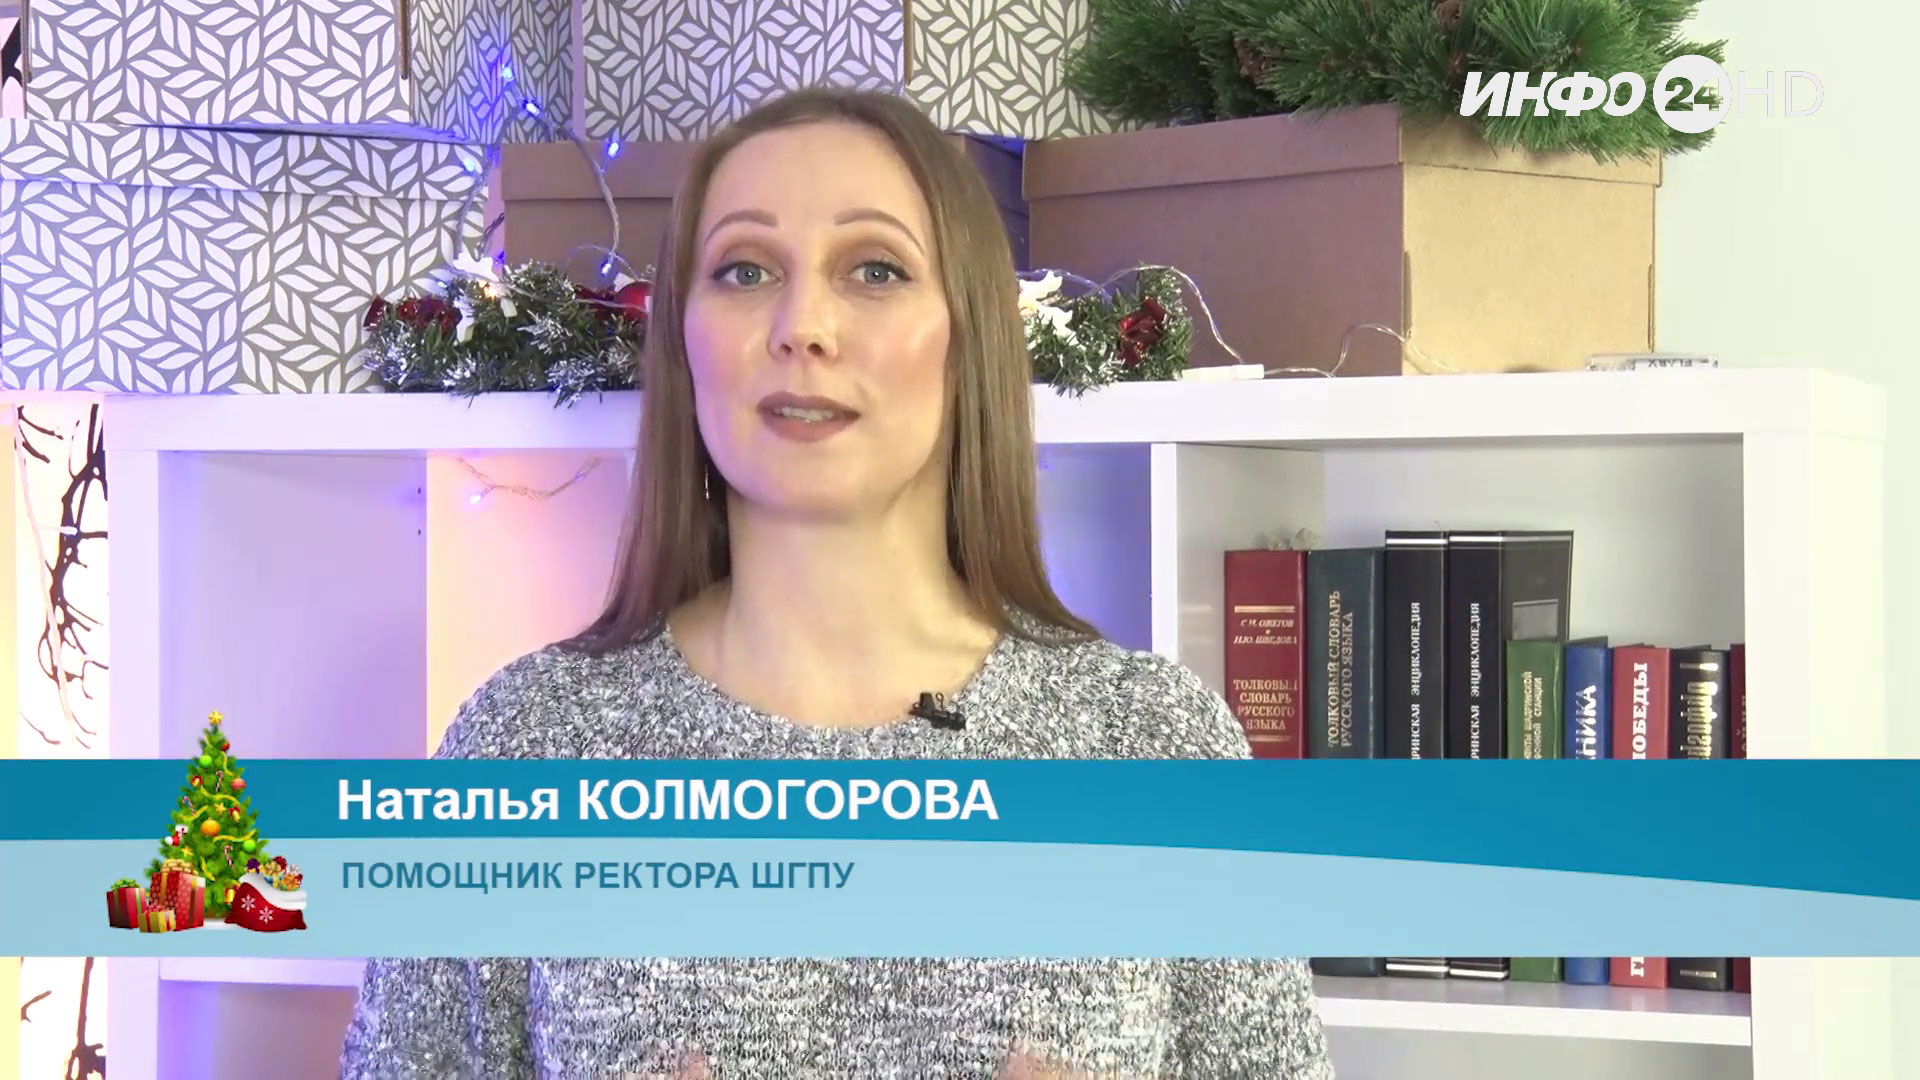 Новогоднее поздравление - 2022. Наталья Колмогорова, помощник ректора ШГПУ